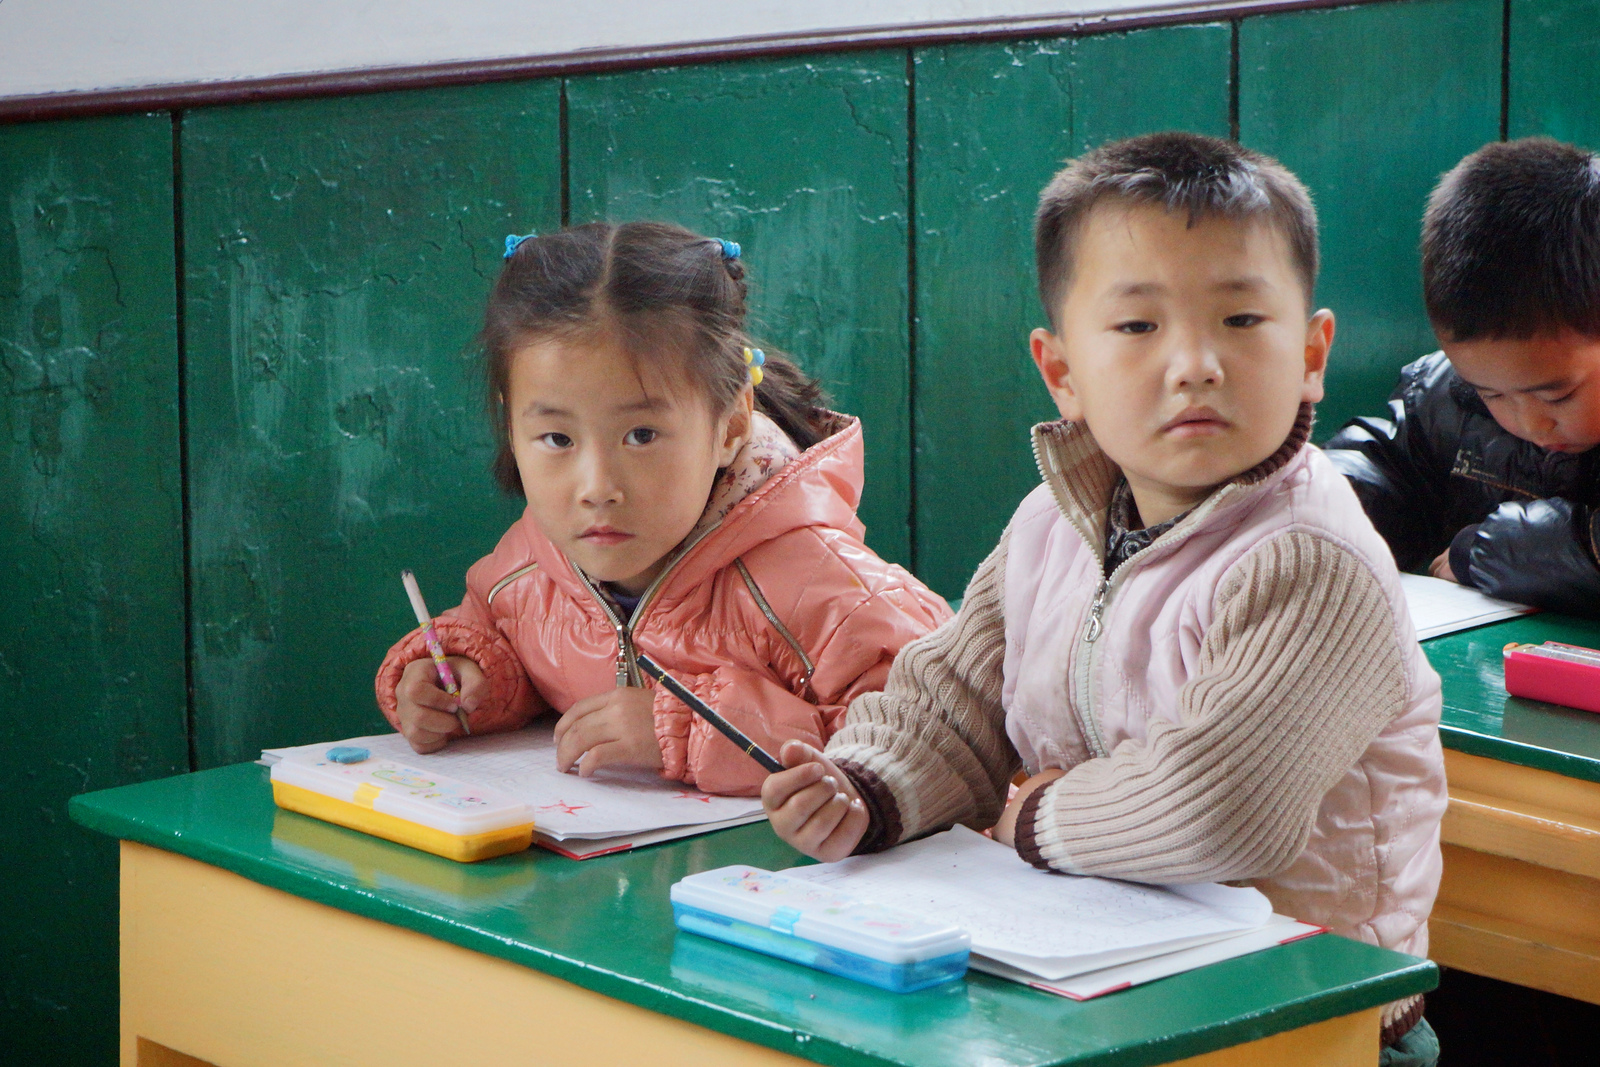 школьники северной кореи